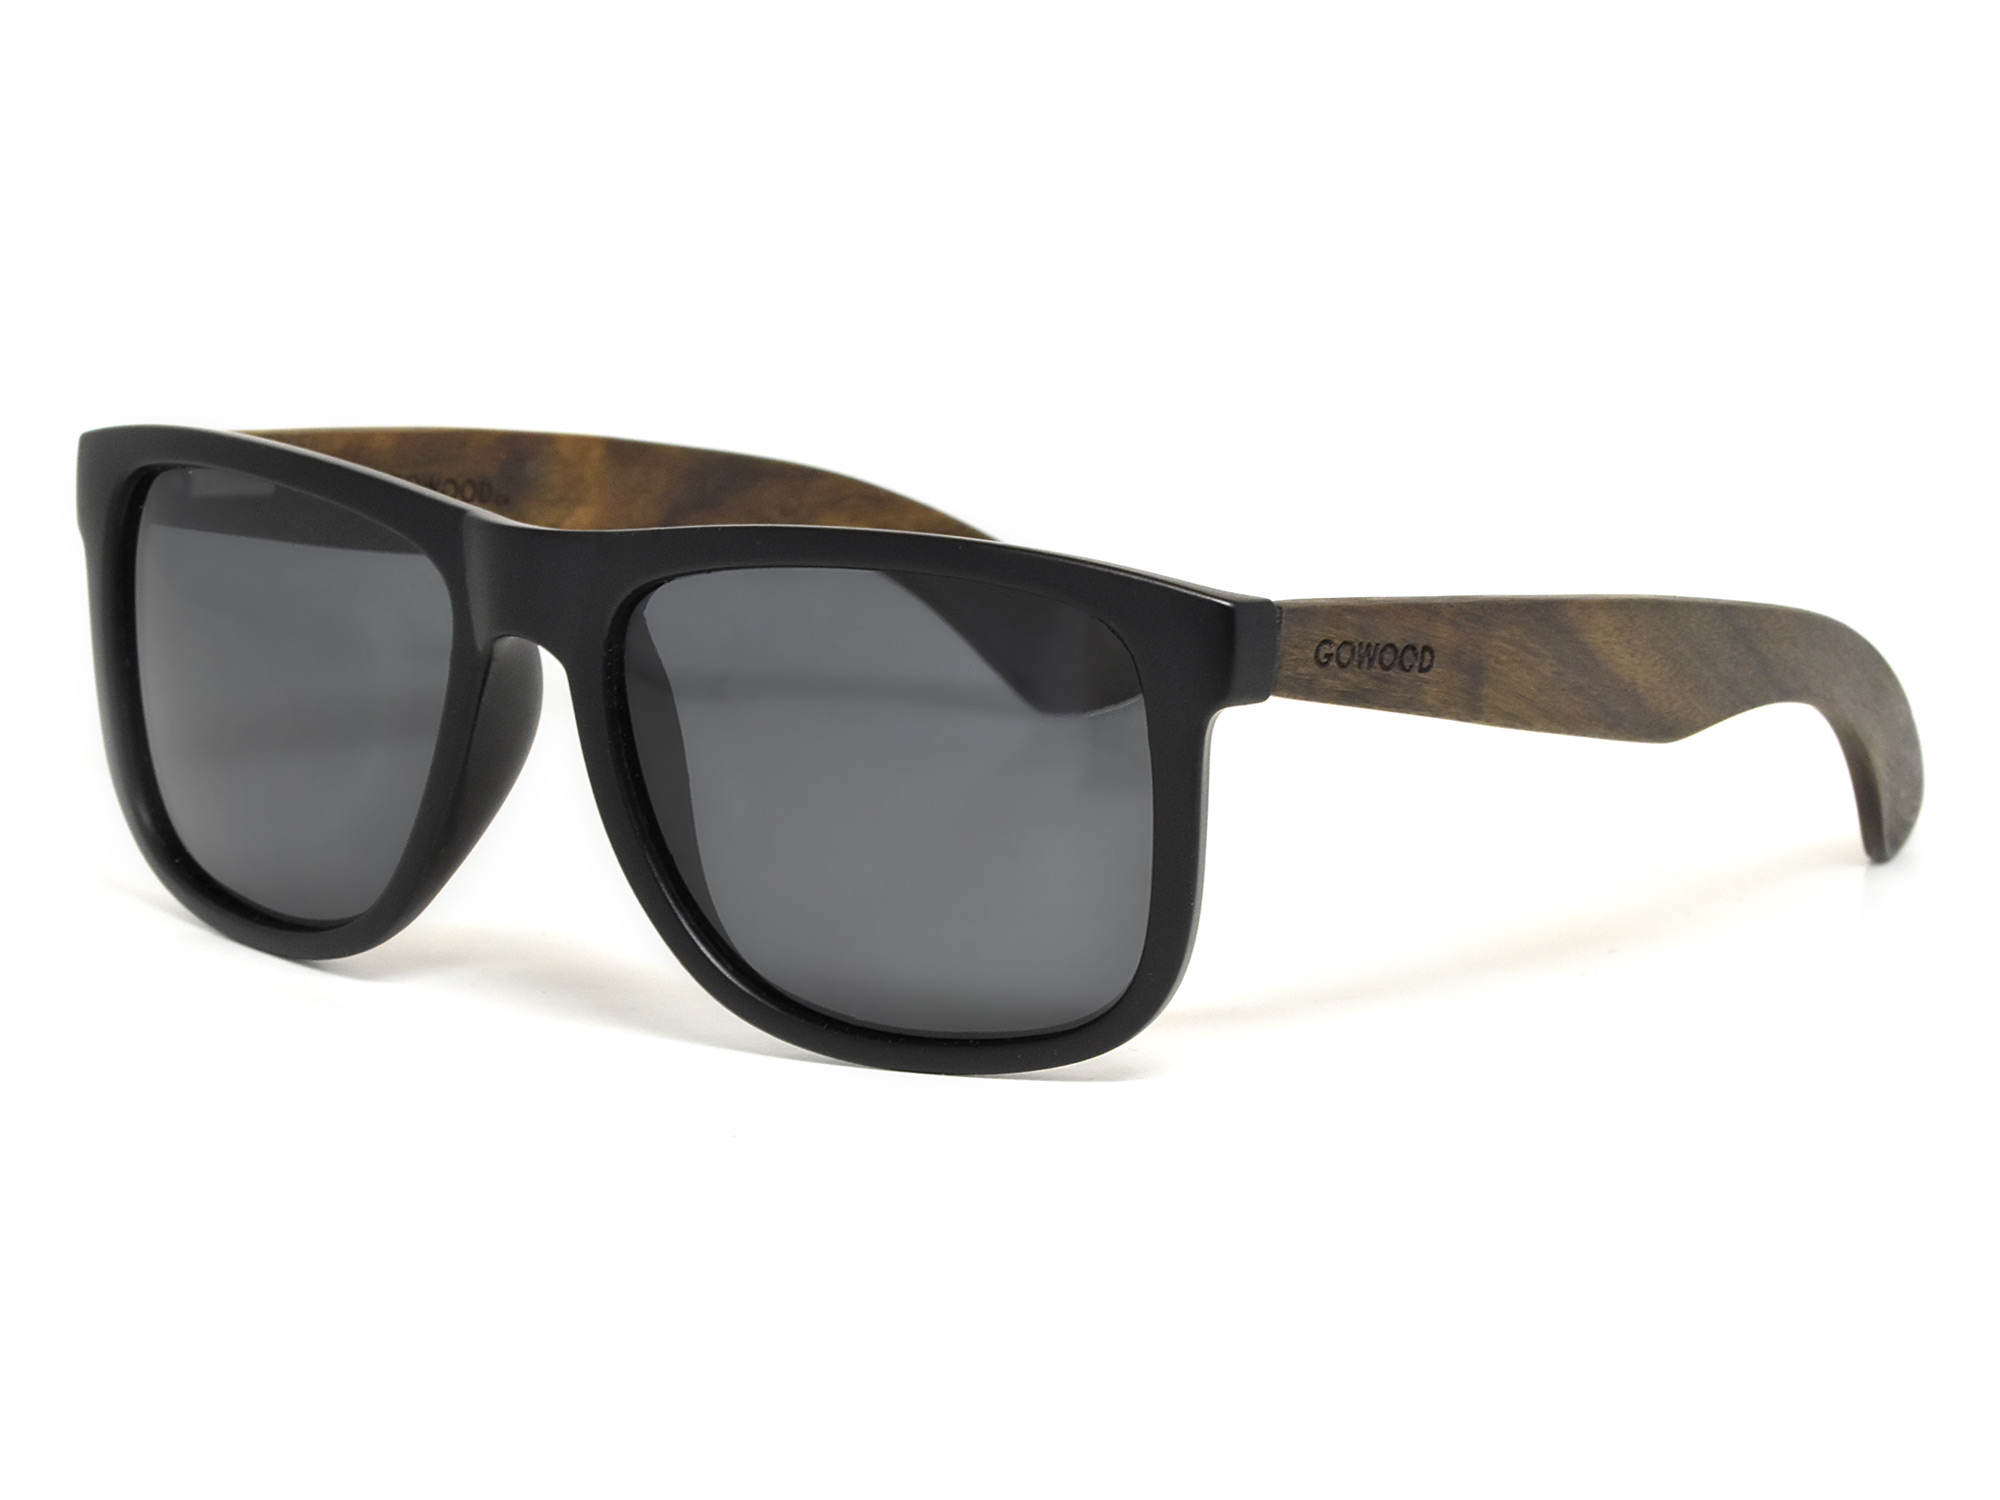 Square ebony wood sunglasses with black polarized lenses